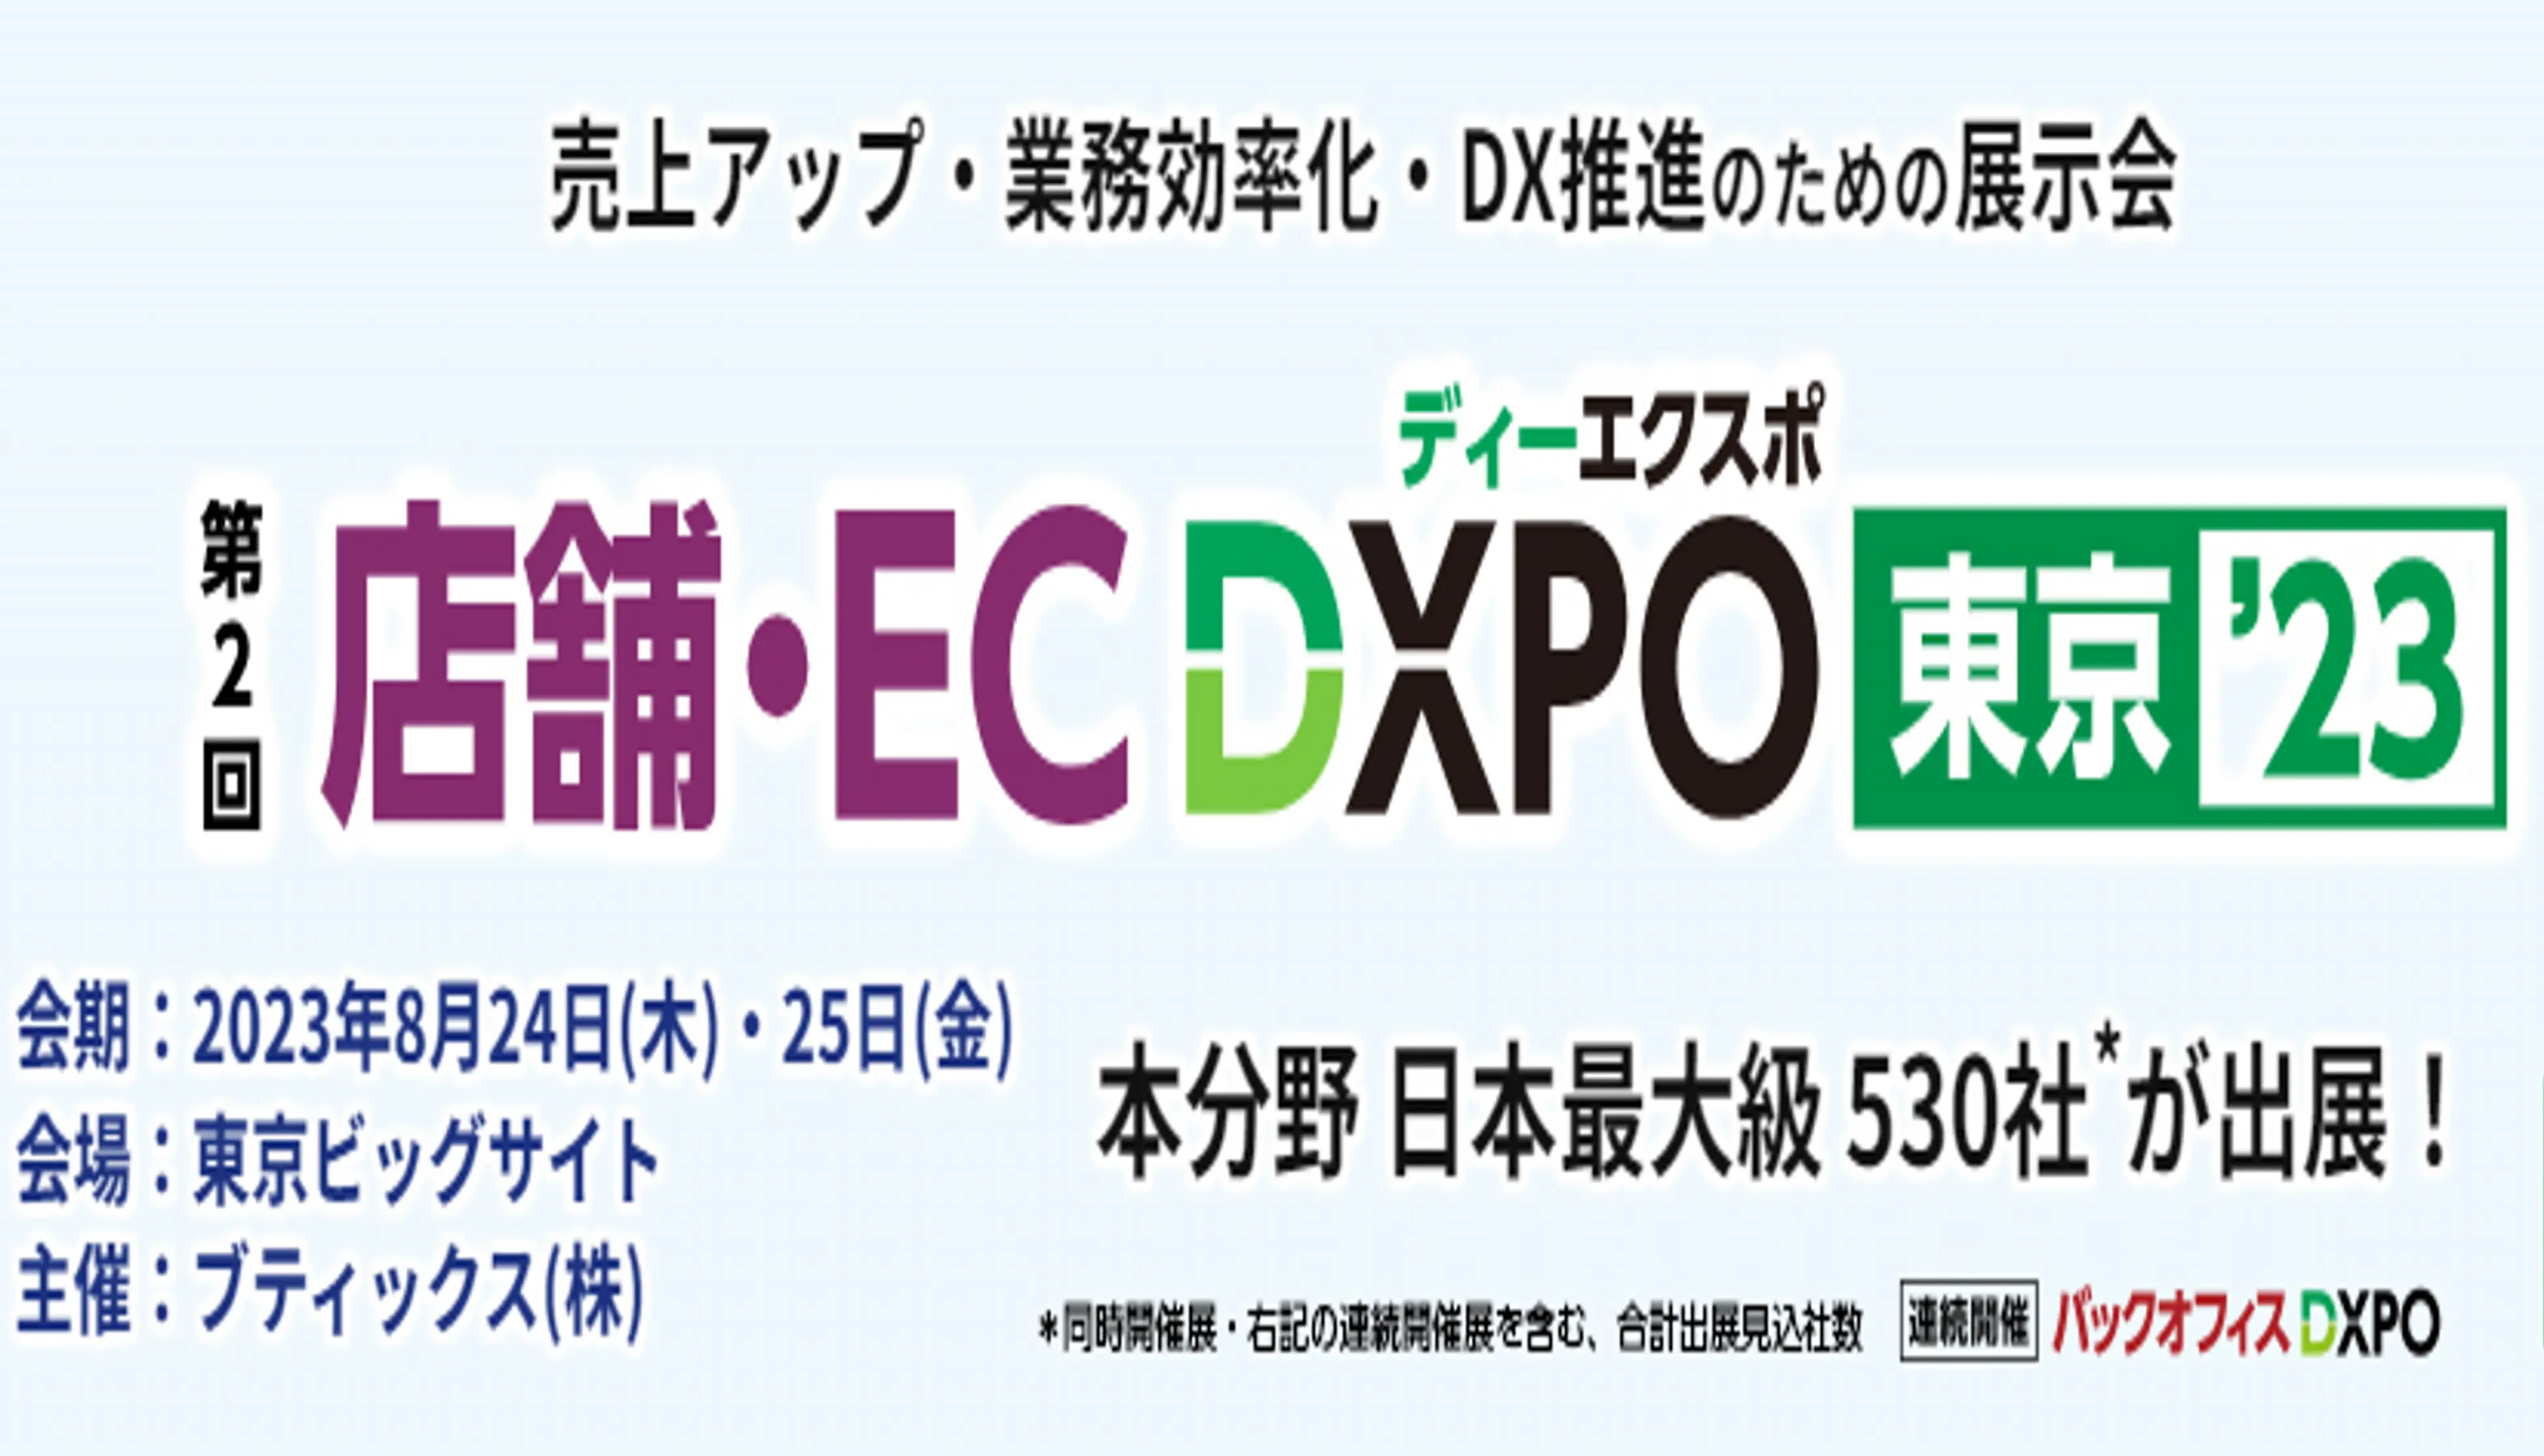 「第2回 店舗・EC DXPO東京 ’23」出展